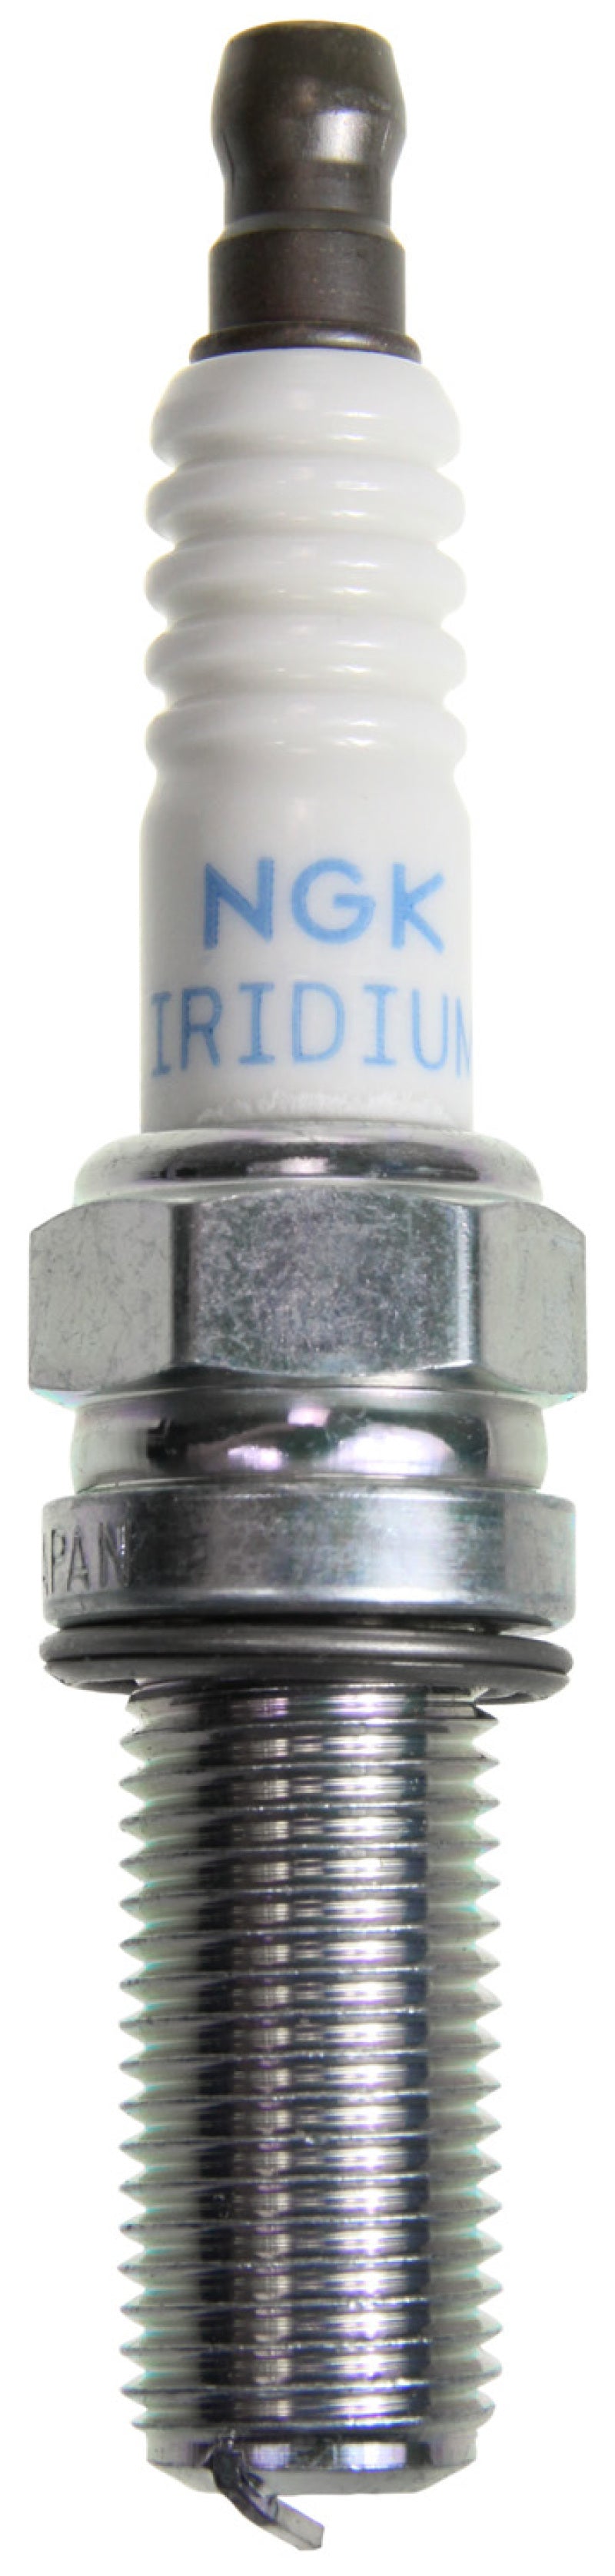 NGK Iridium/Platinum Spark Plug Box of 4 (R2556G-8).